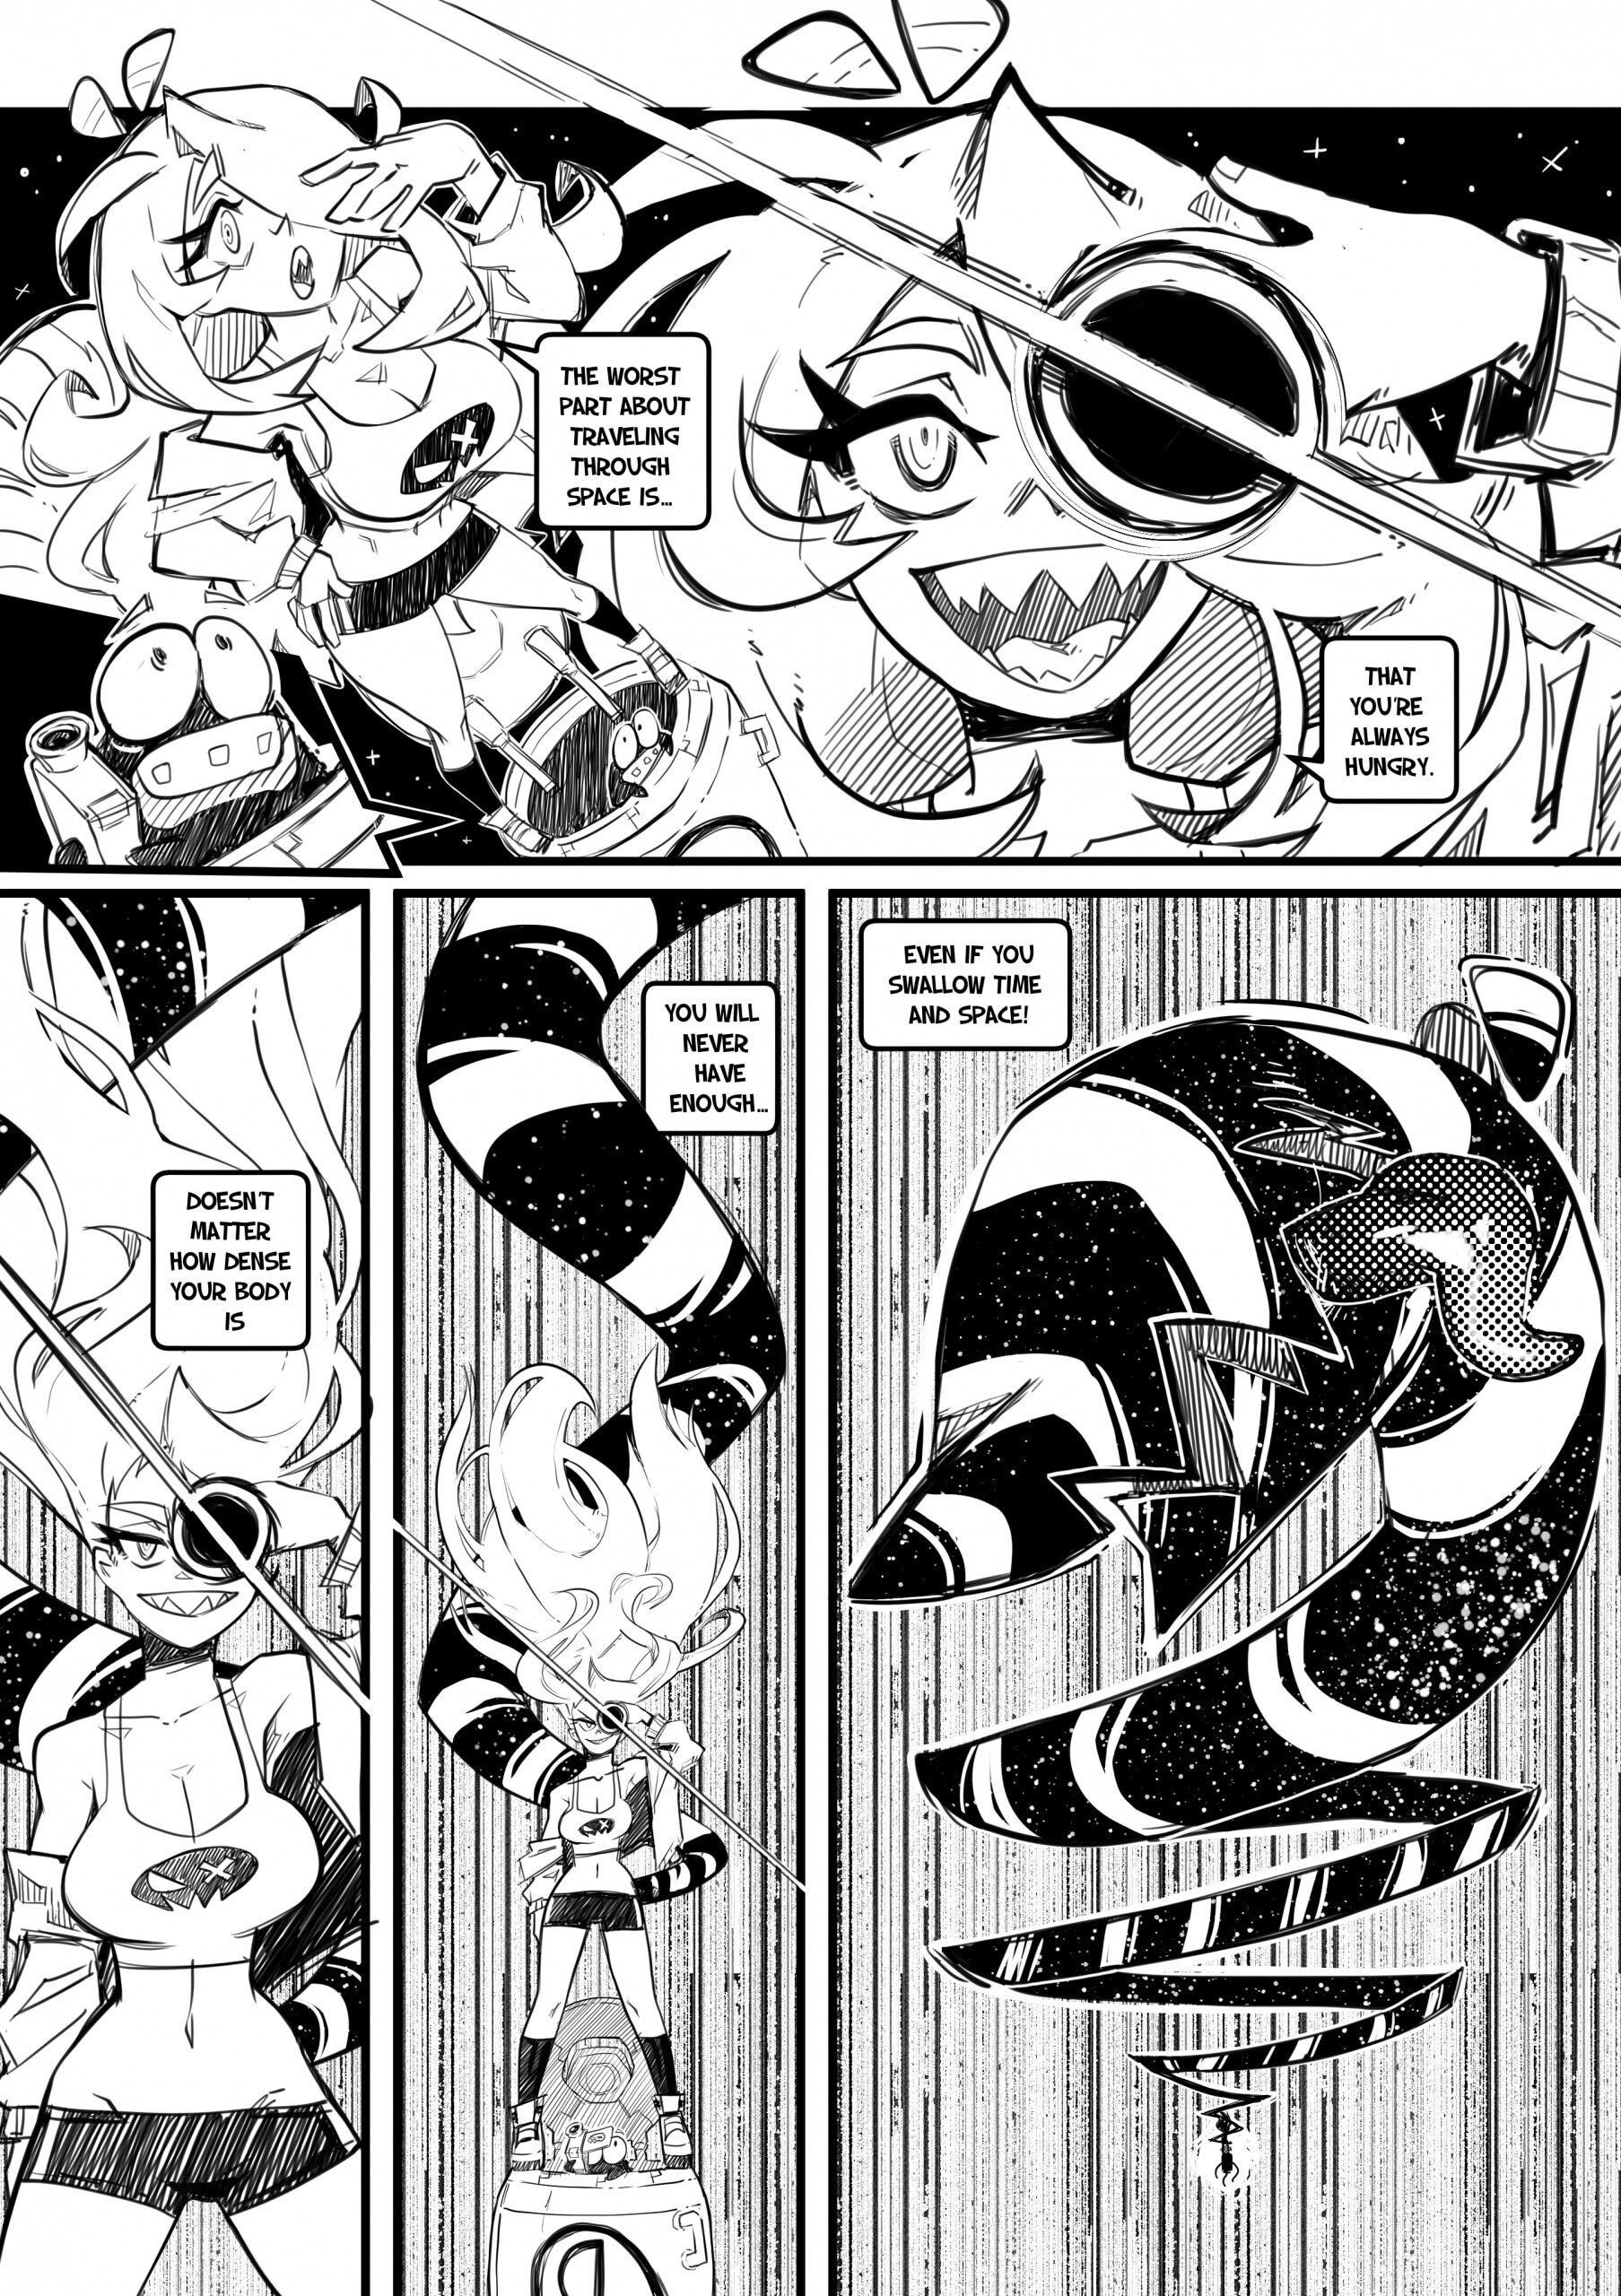 Skarpworld 10: Milk Crisis 4 - Gravity - Page 27